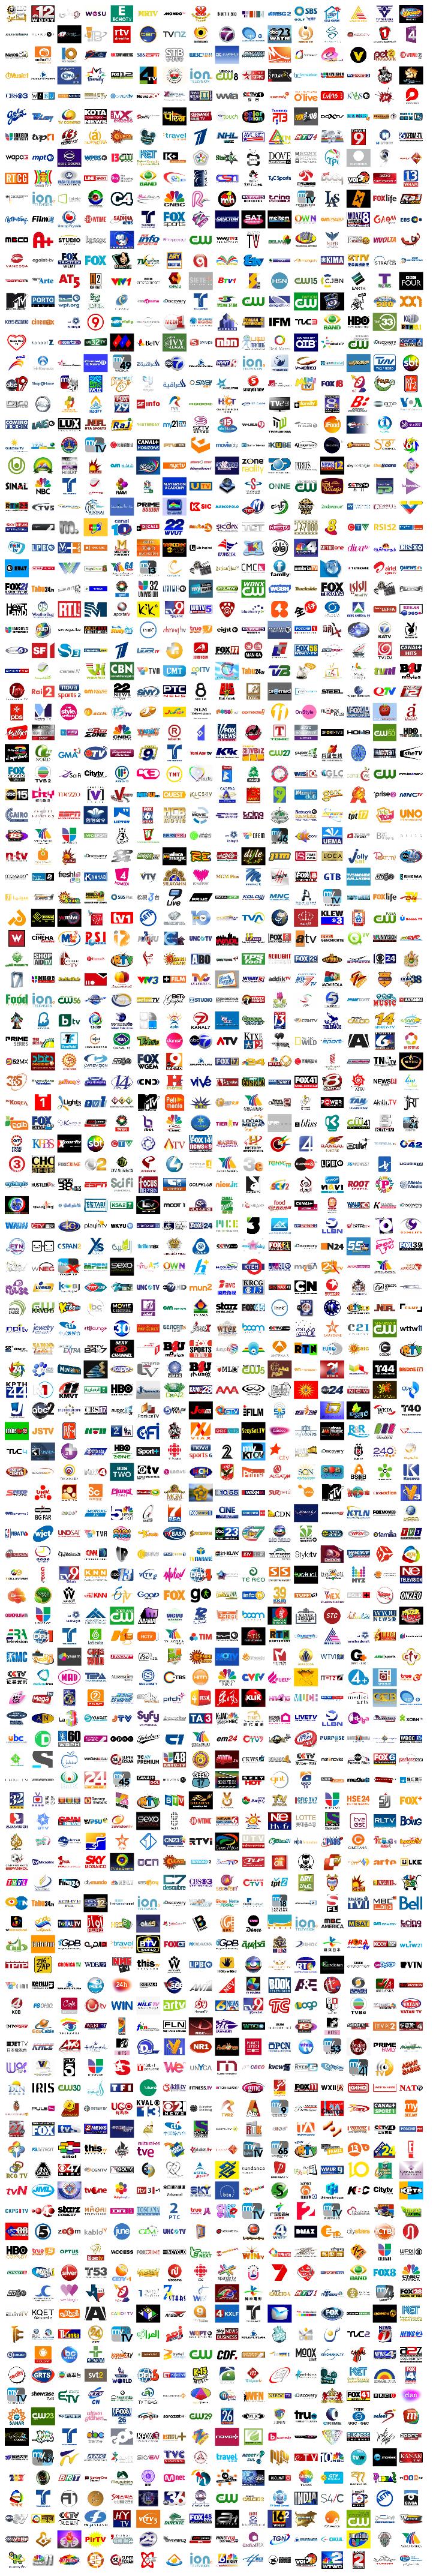 9.000 TV logos